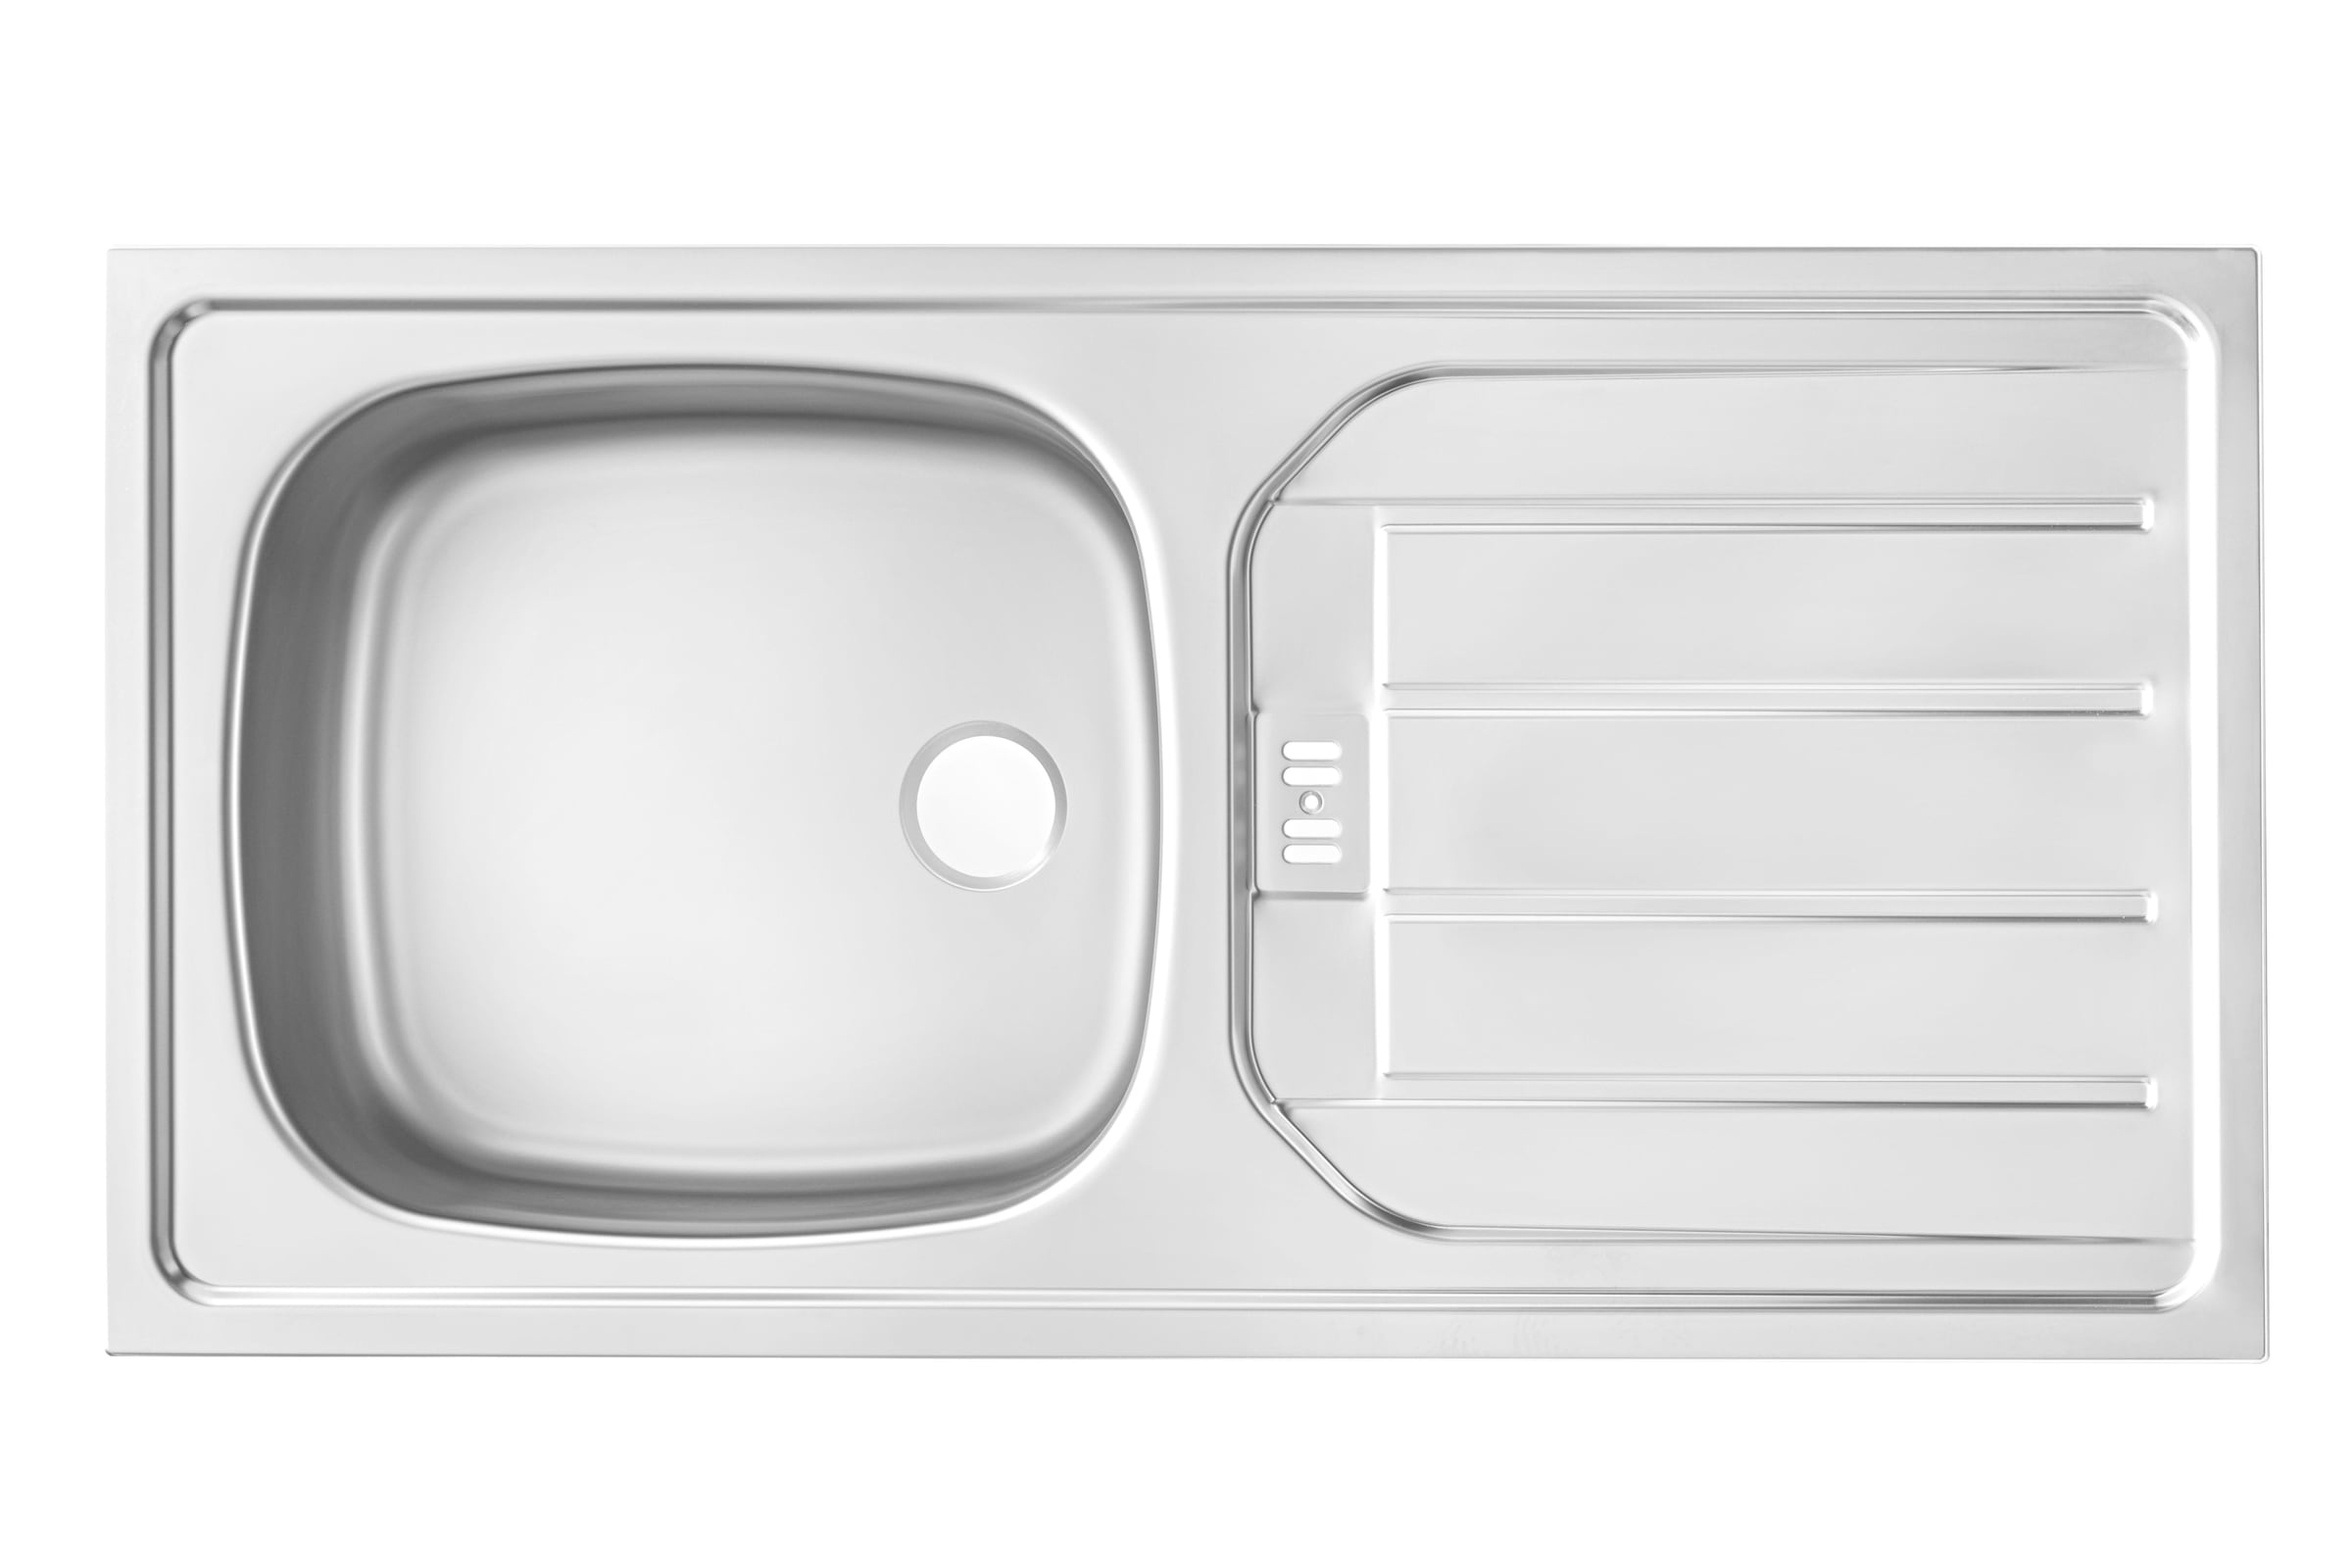 wiho Küchen Küchenzeile »Zell«, mit E-Geräten, Breite 280 cm